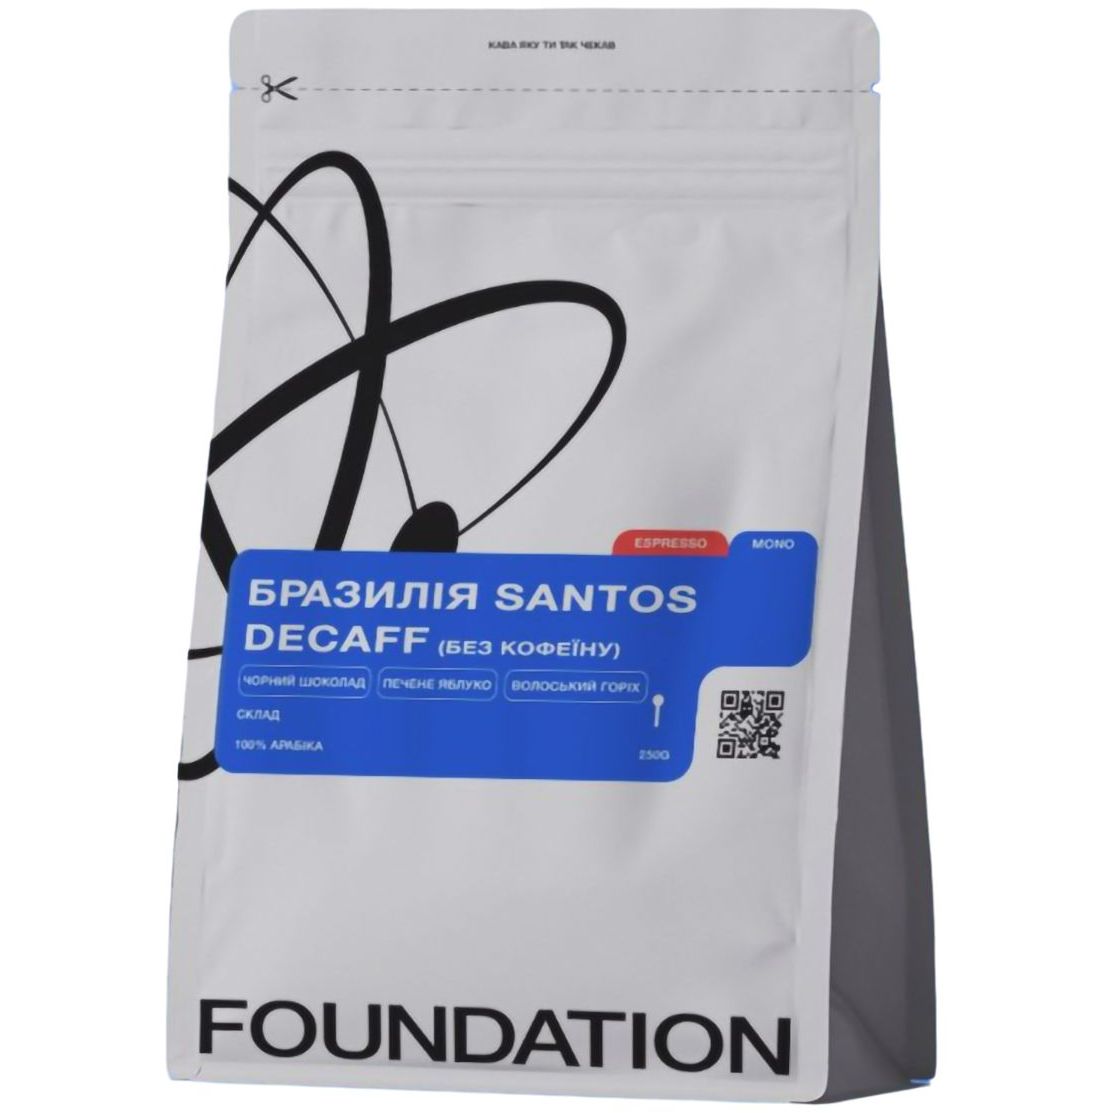 Кофе в зернах Foundation Brazil Santos Decaff без кофеина 250 г - фото 1